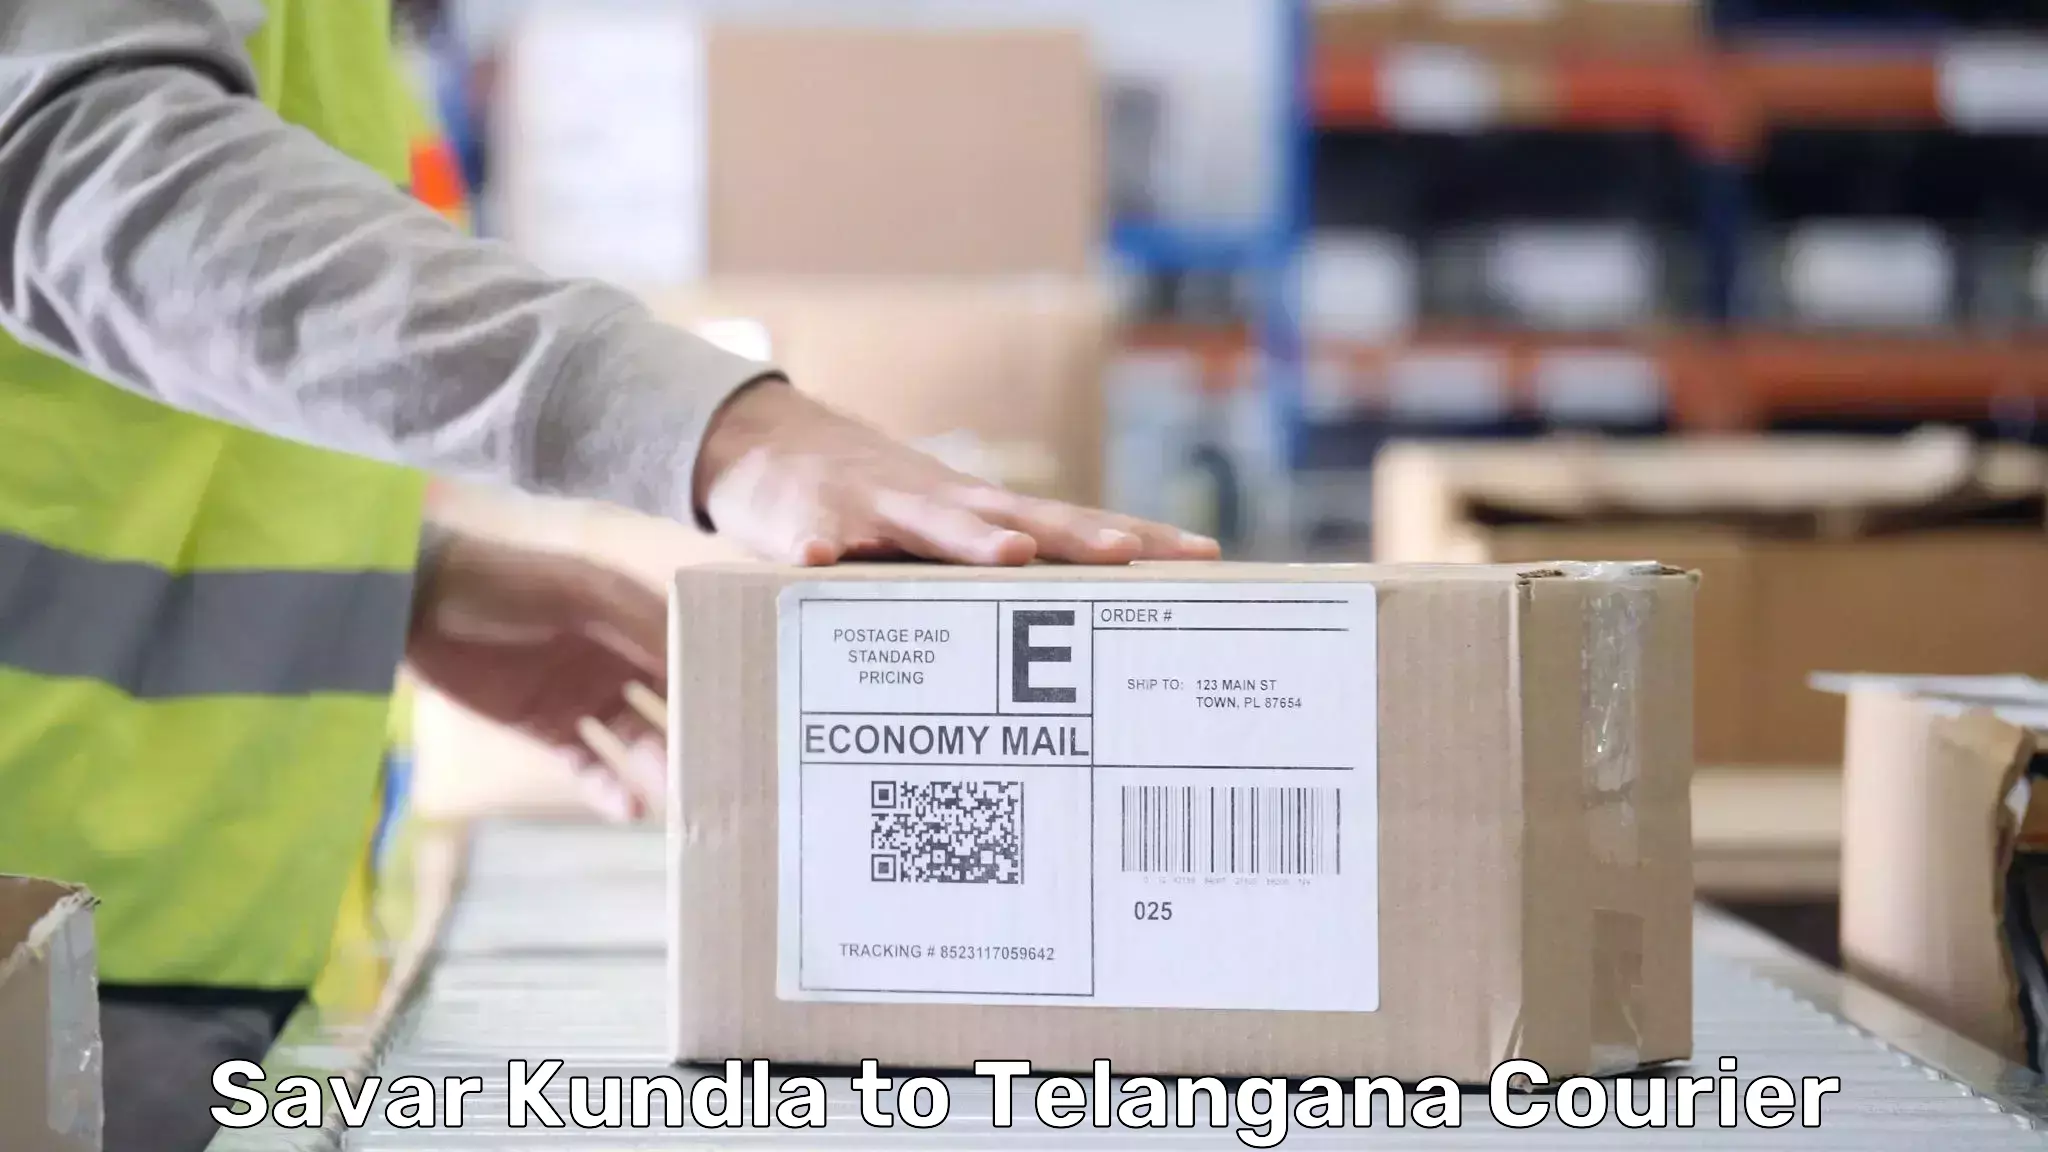 Professional baggage delivery Savar Kundla to Secunderabad